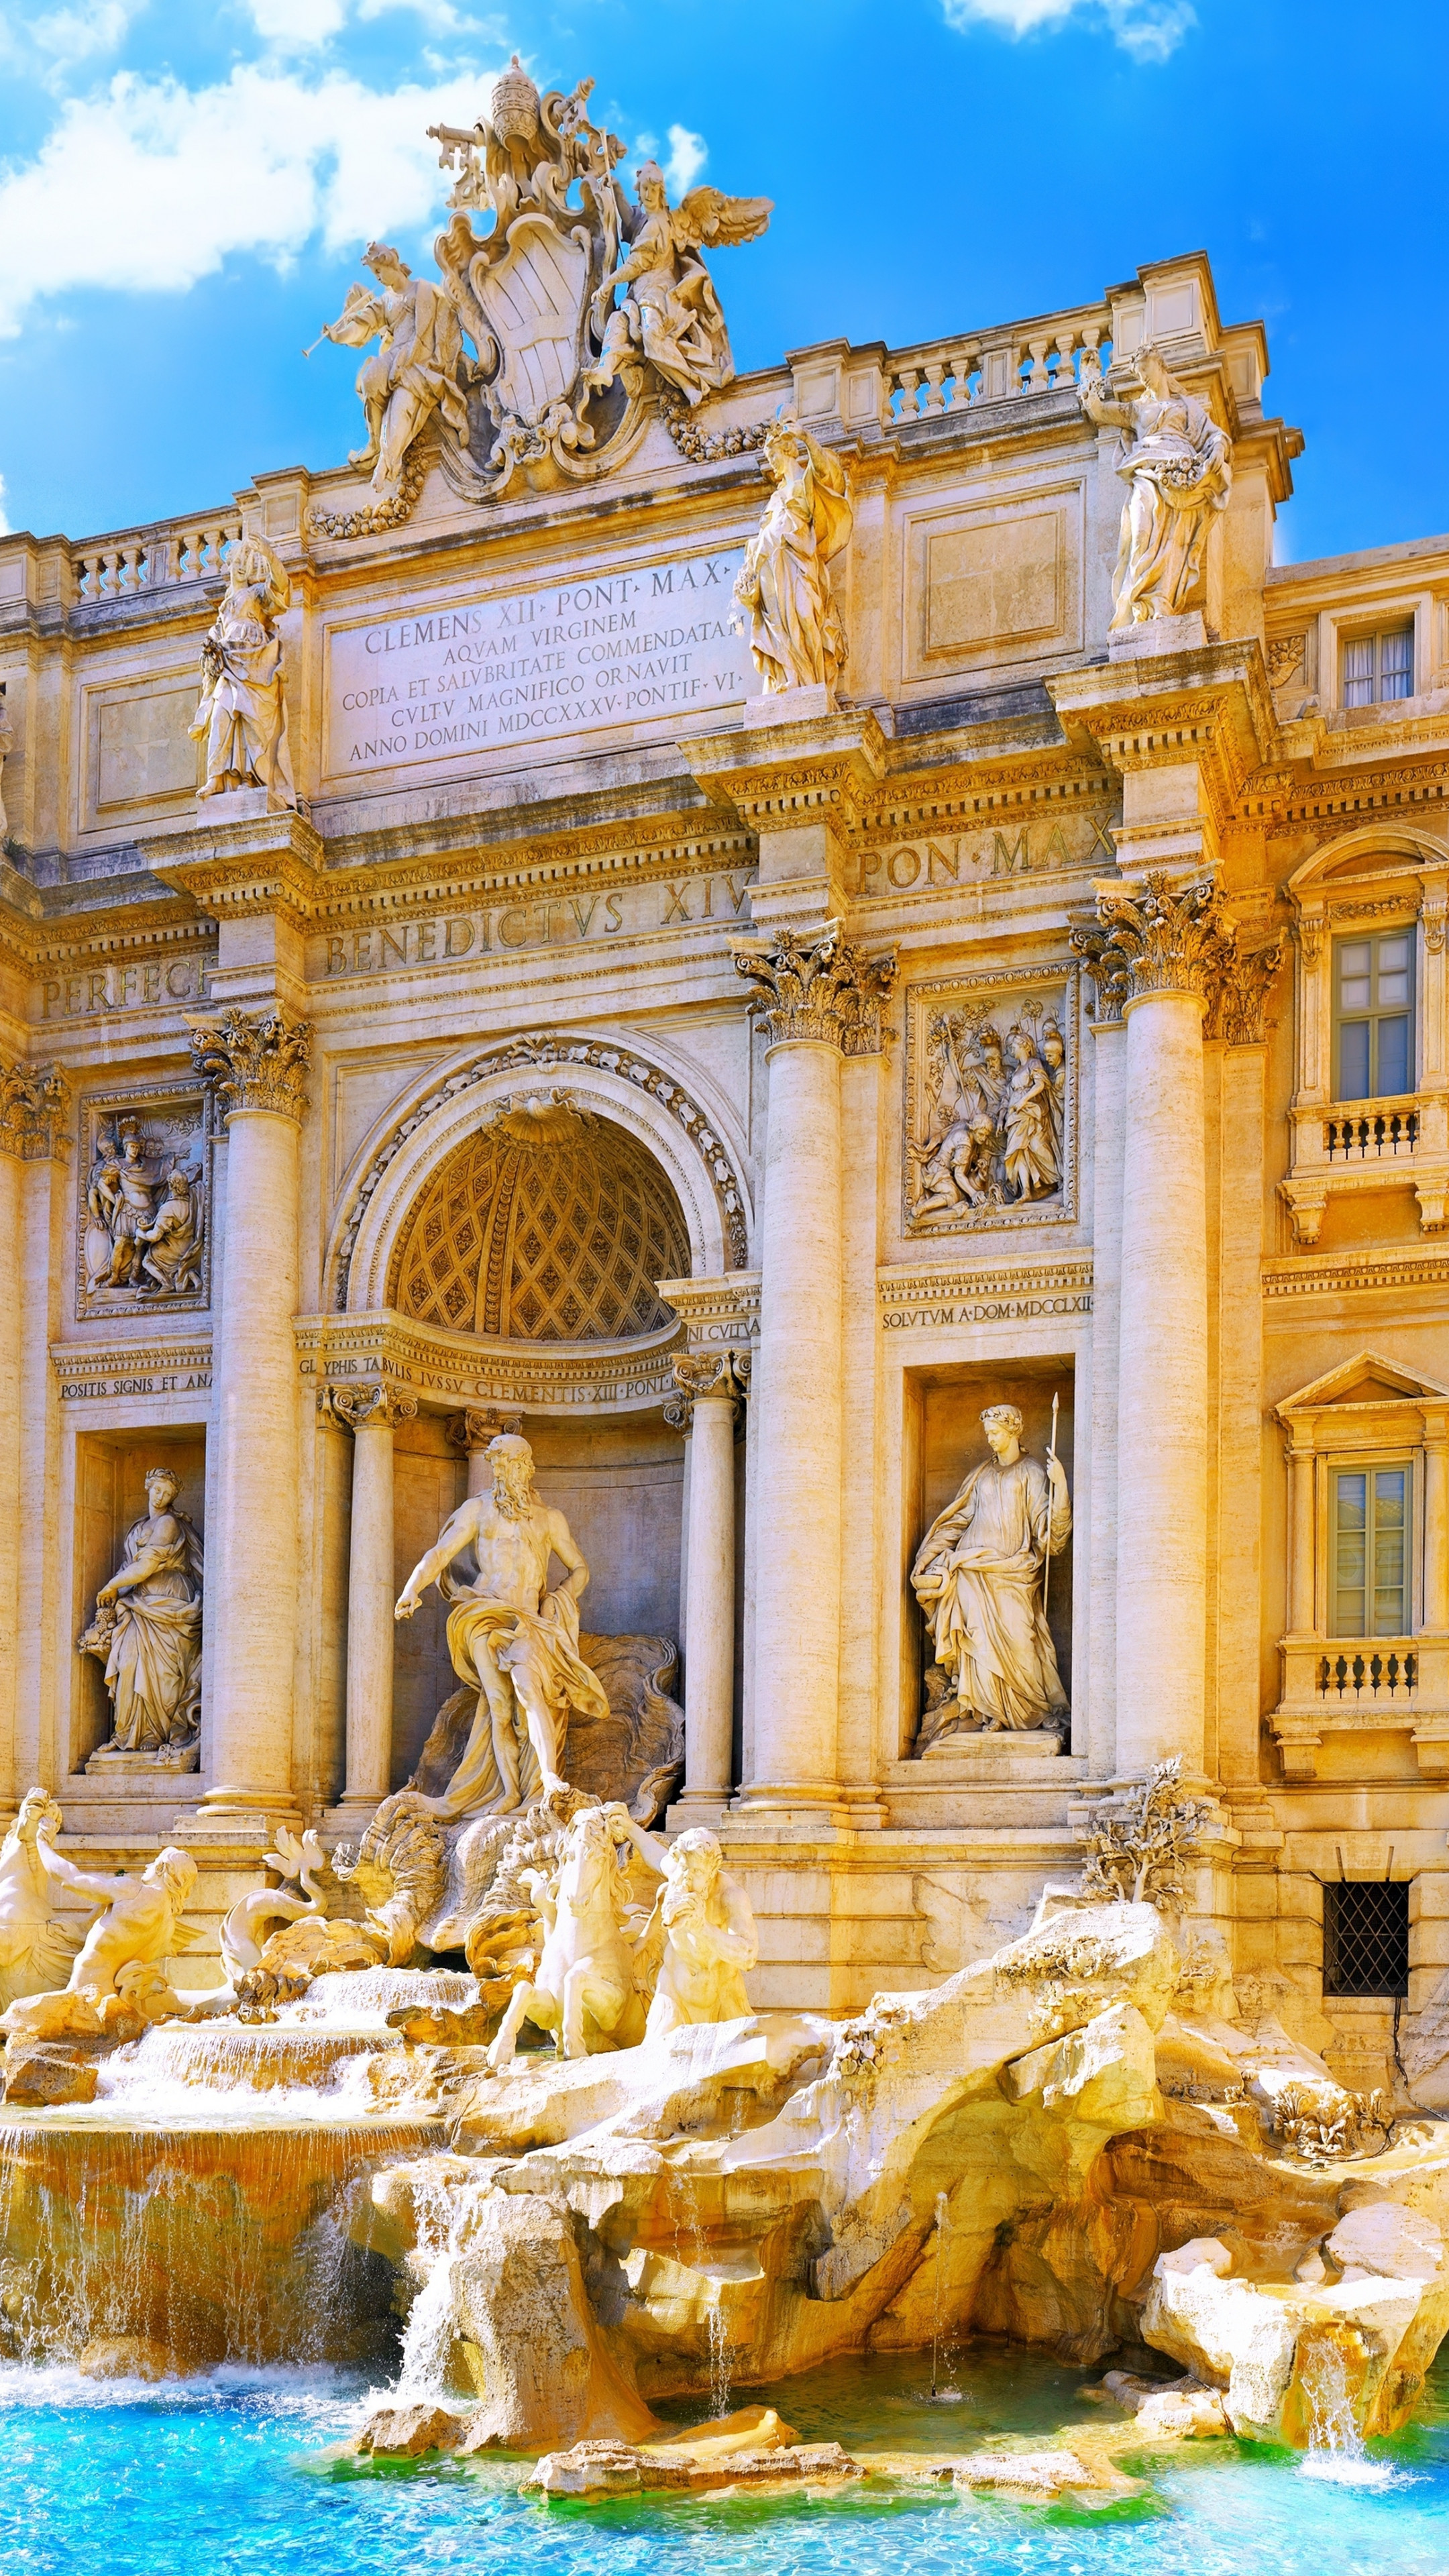 Обои Фонтан Треви, Рим, Италия, туризм, Путешествие, Trevi Fountain, Rome, Italy, Tourism, Travel, Архитектура #5073